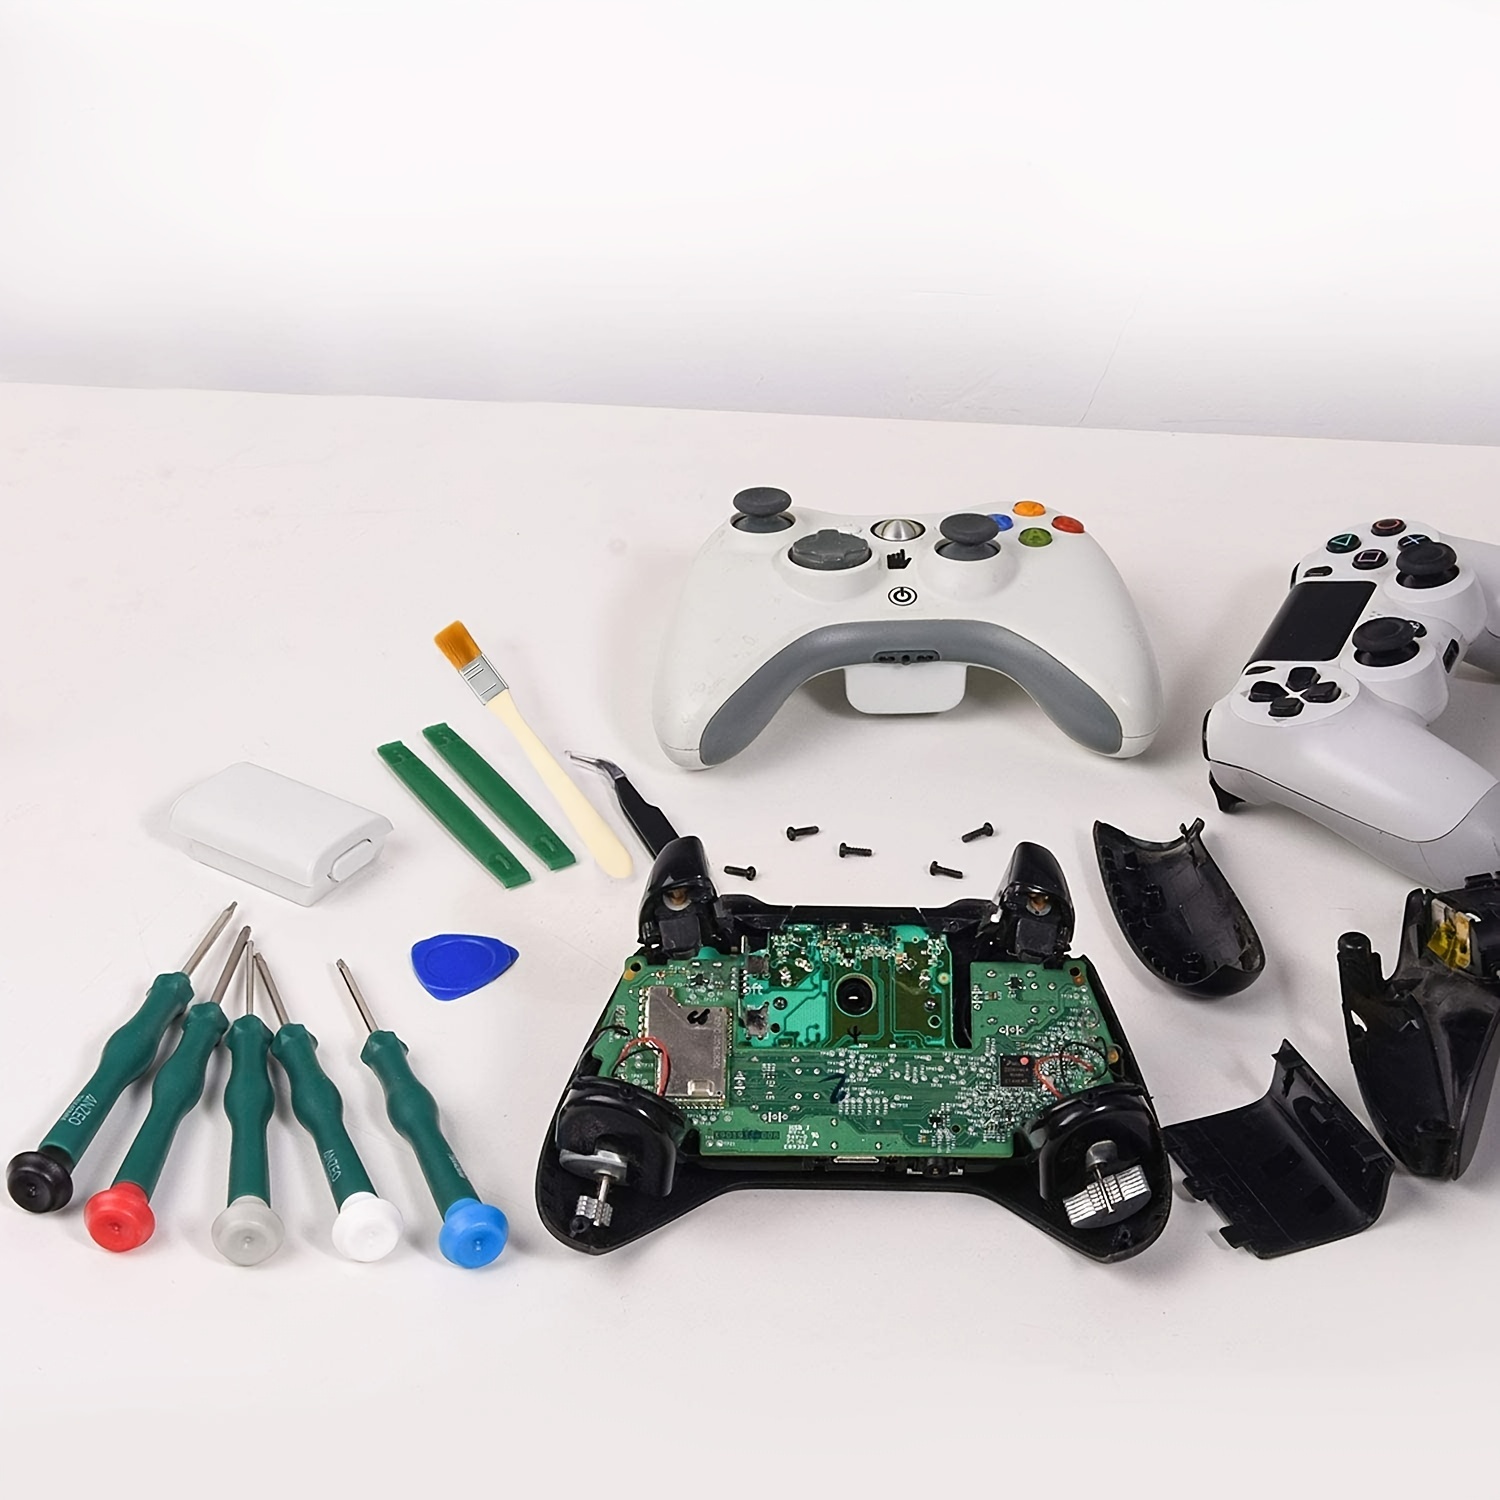 JOREST Kit Demontage PS4 PS3 PS5 Xbox one/360, 11pcs Kit Nettoyage, Outil  Reparation pour Manette et Console, avec Tournevis Torx T6 T8 T10 et PH0,  Pieds Biche, Pinces à épiler, Brosse 